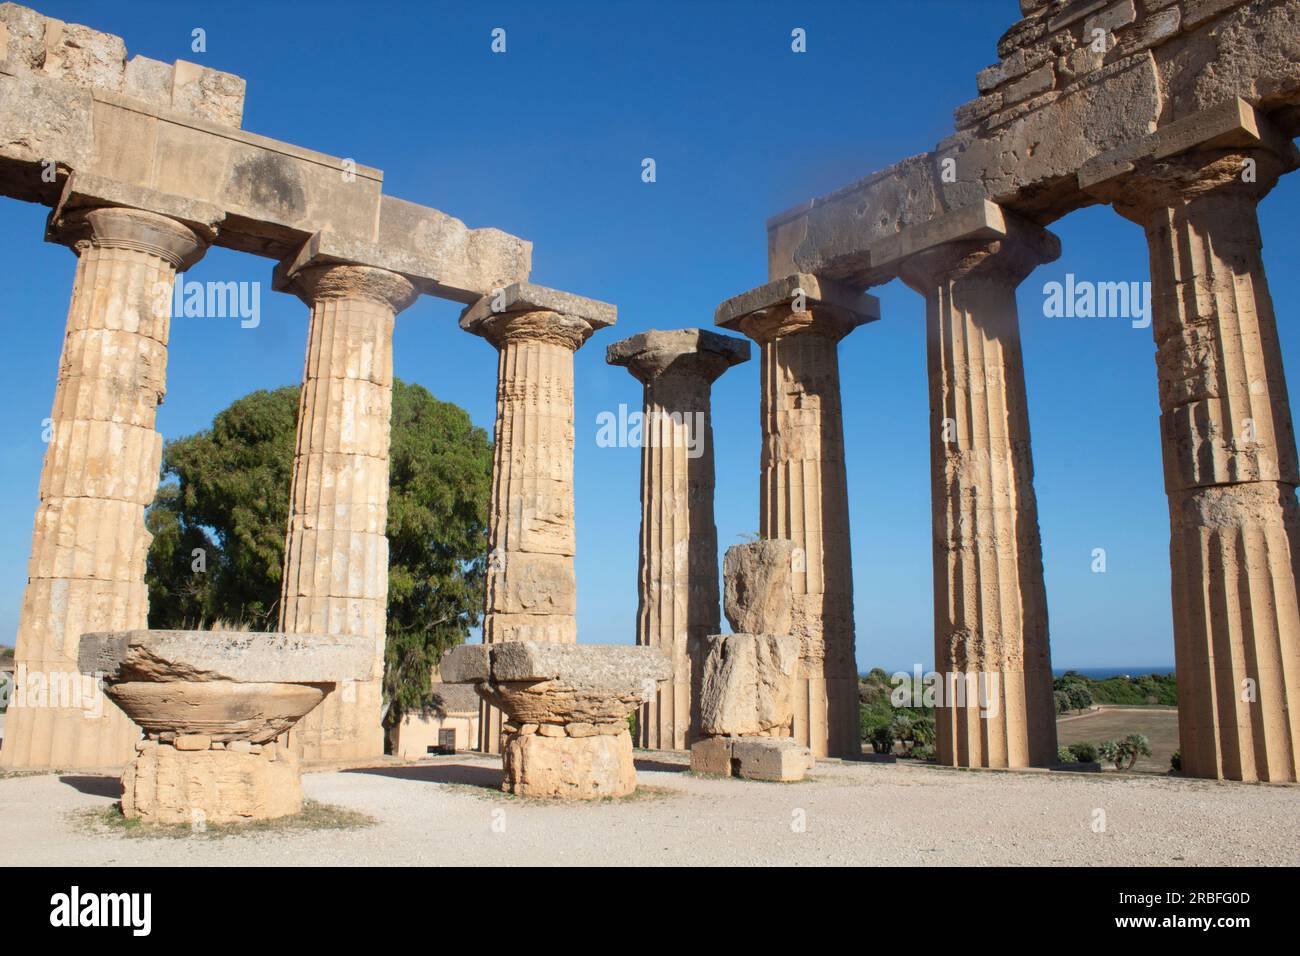 Der rekonstruierte Tempel der Hera - Ruinen eines griechischen Tempels in Selinunte - Selinus - im äußersten Westen Siziliens, Italien Stockfoto